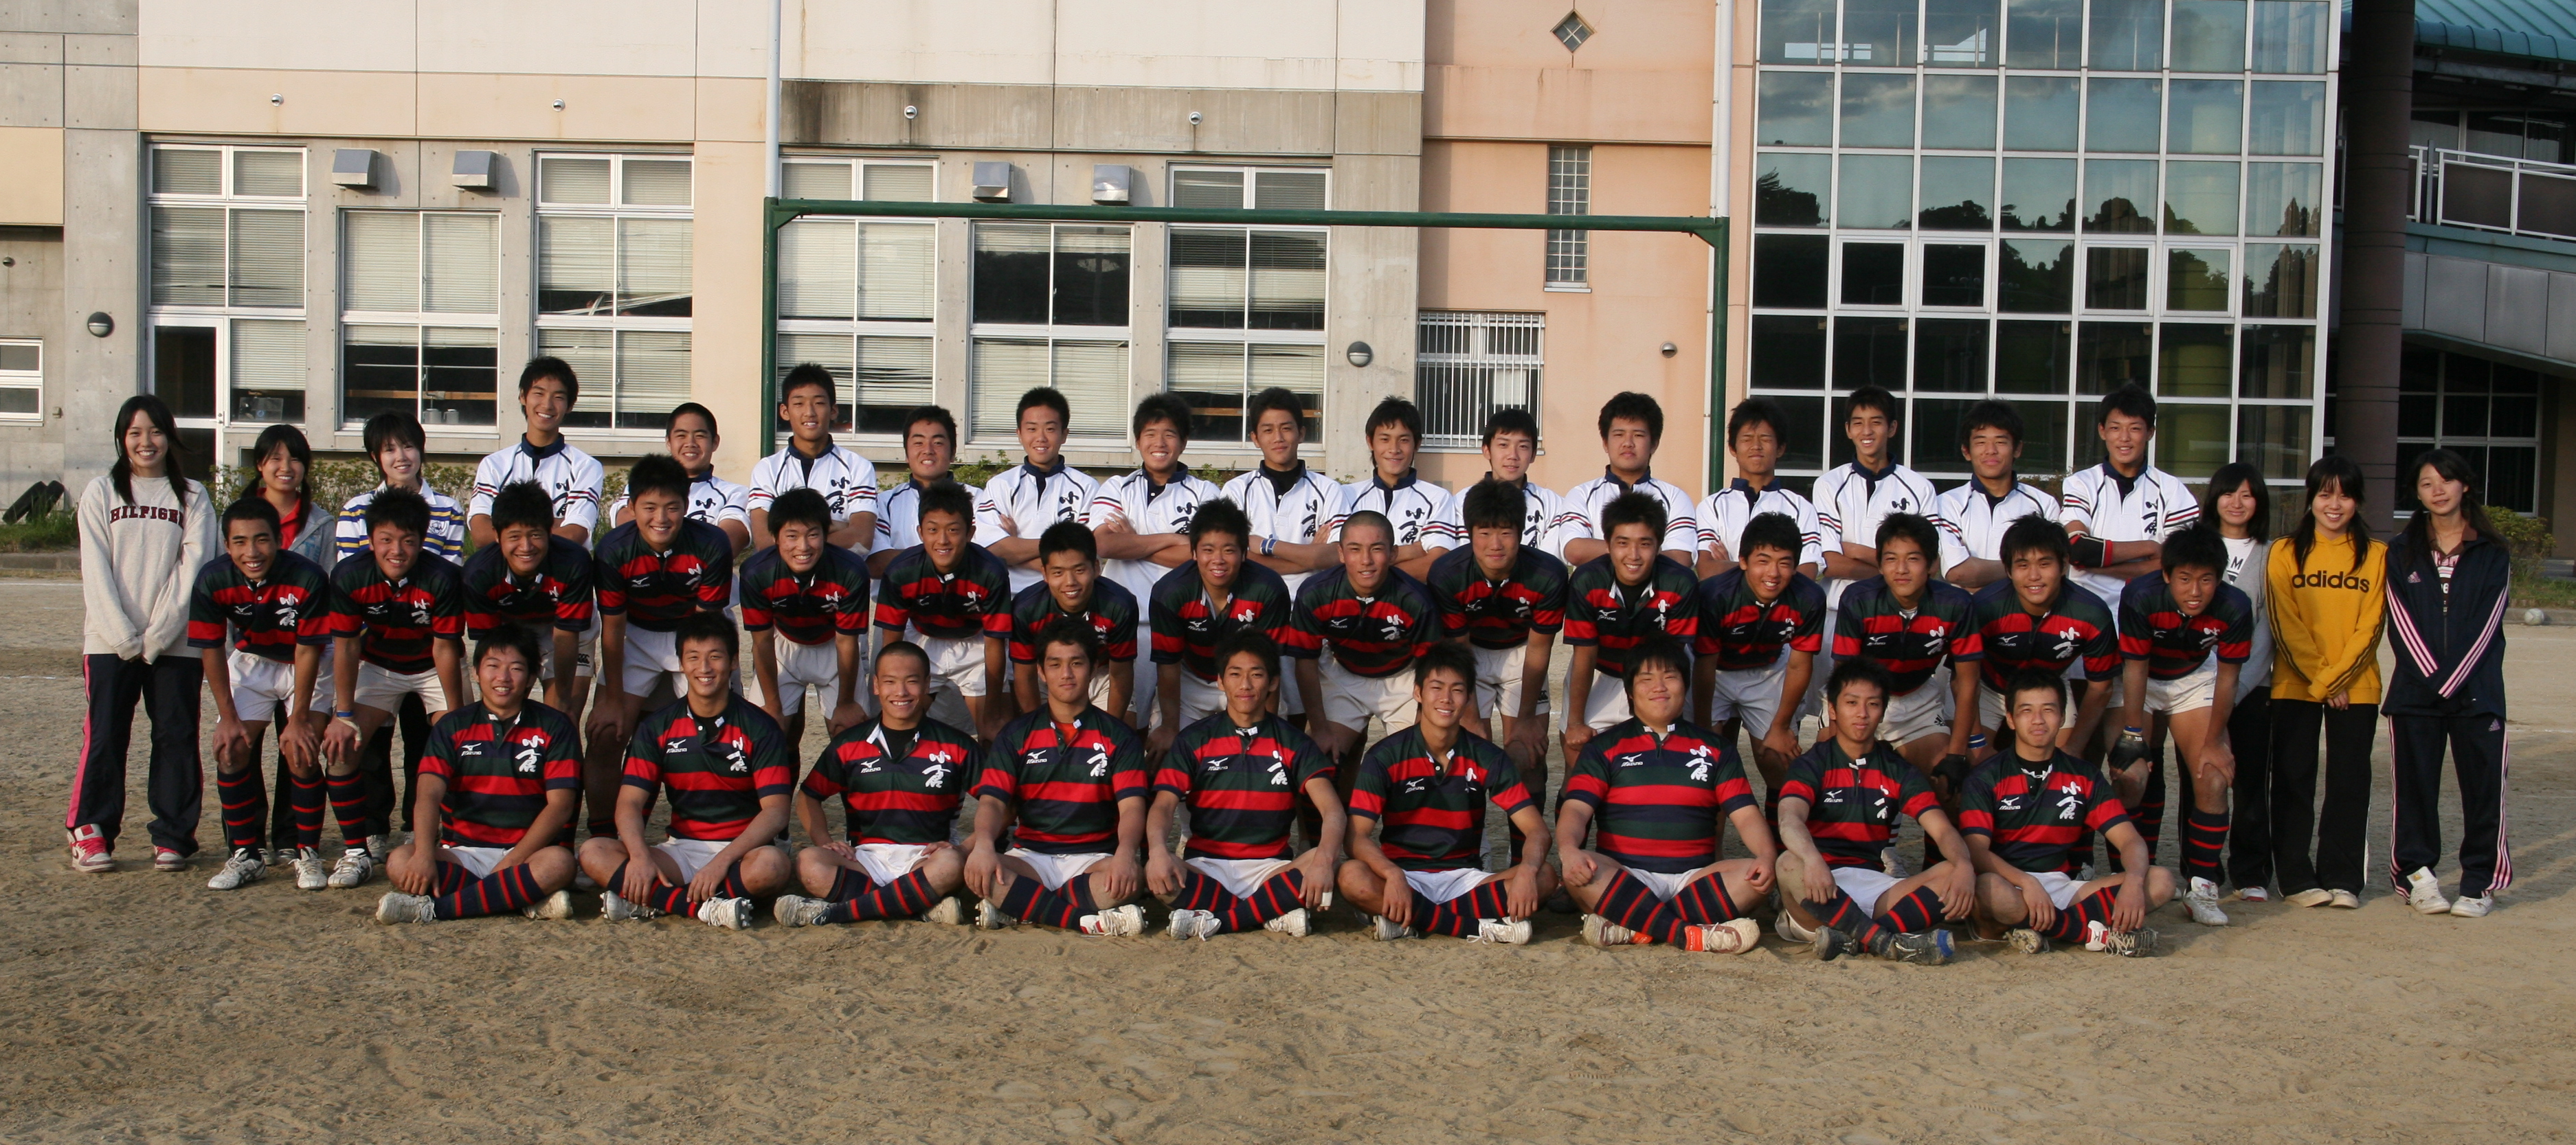 http://kokura-rugby.sakura.ne.jp/2009.10.18%E5%B0%8F%E5%80%89%E9%AB%98%E6%A0%A1%EF%BC%A7.JPG